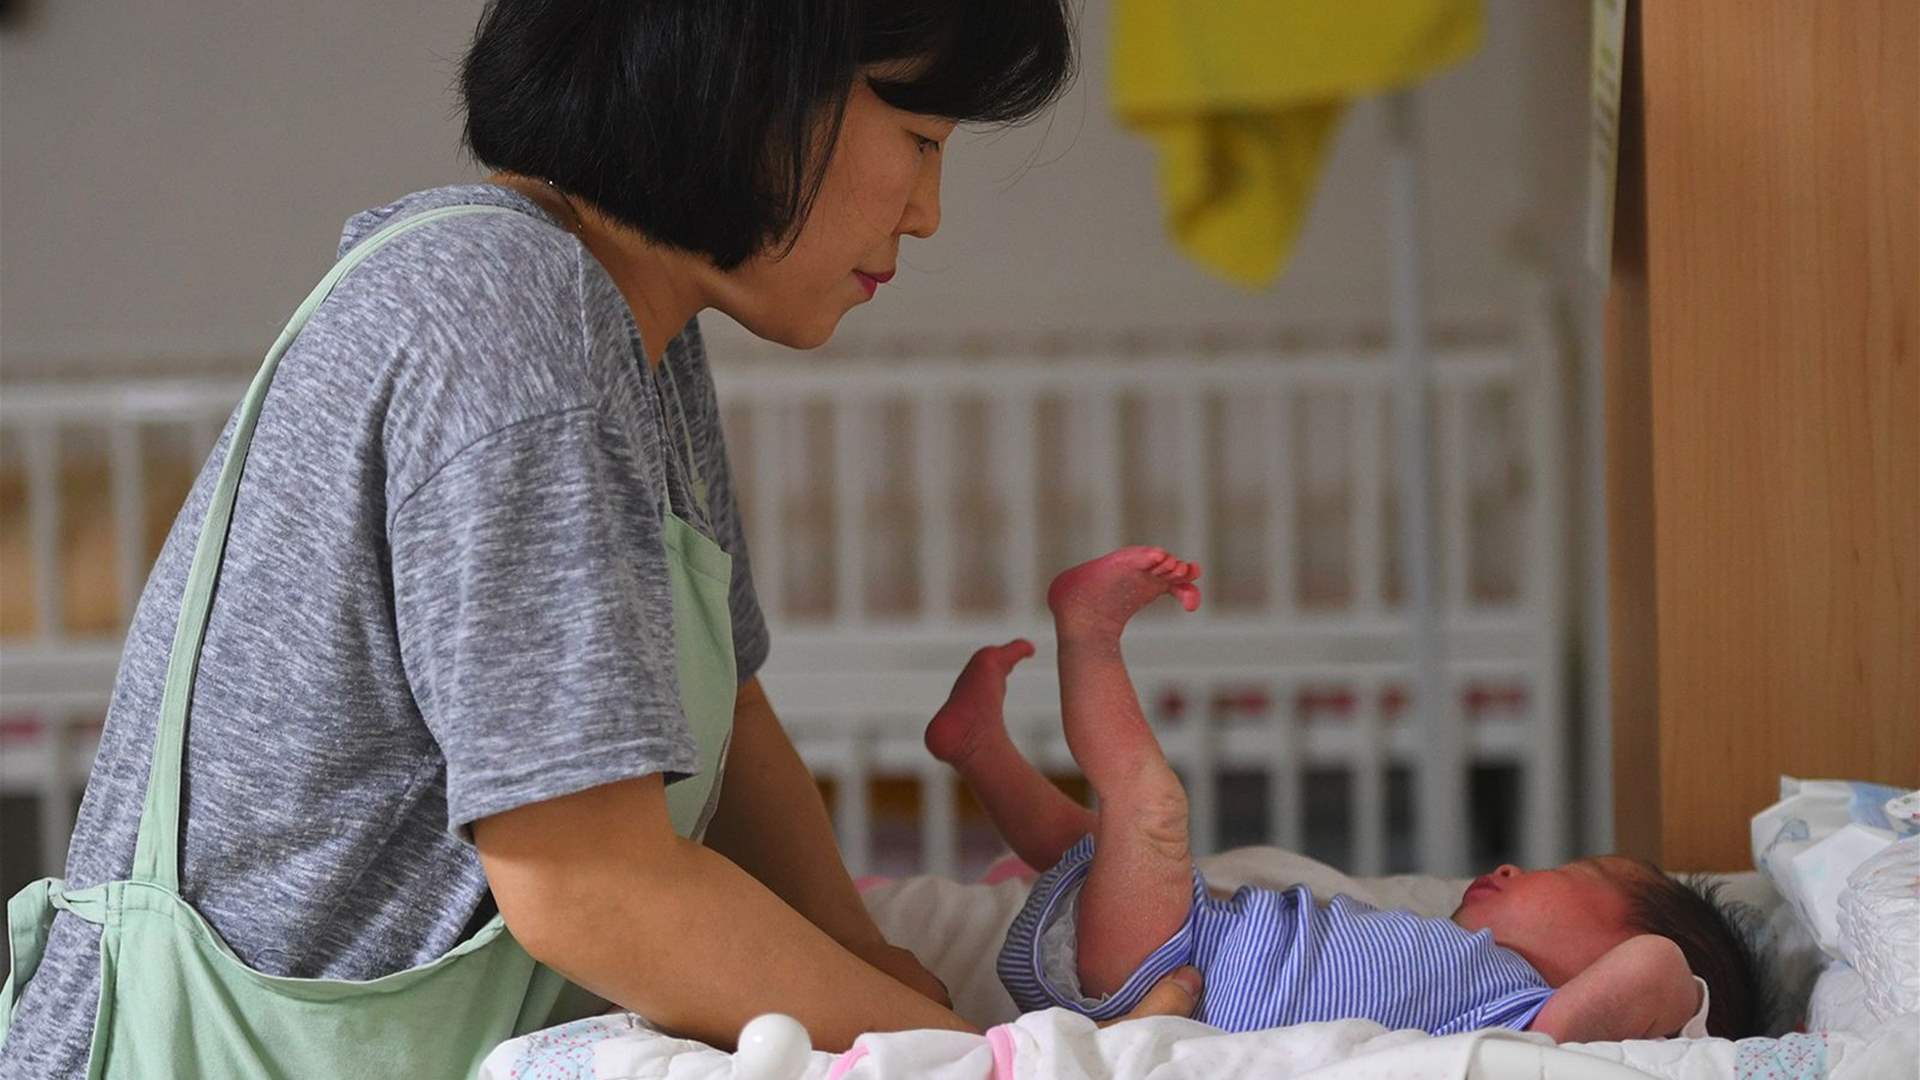 في كوريا الجنوبية: شركة تُقدم لموظفيها مبلغاً ضخماً لإنجاب الأطفال... تجاوز 70 ألف دولار!